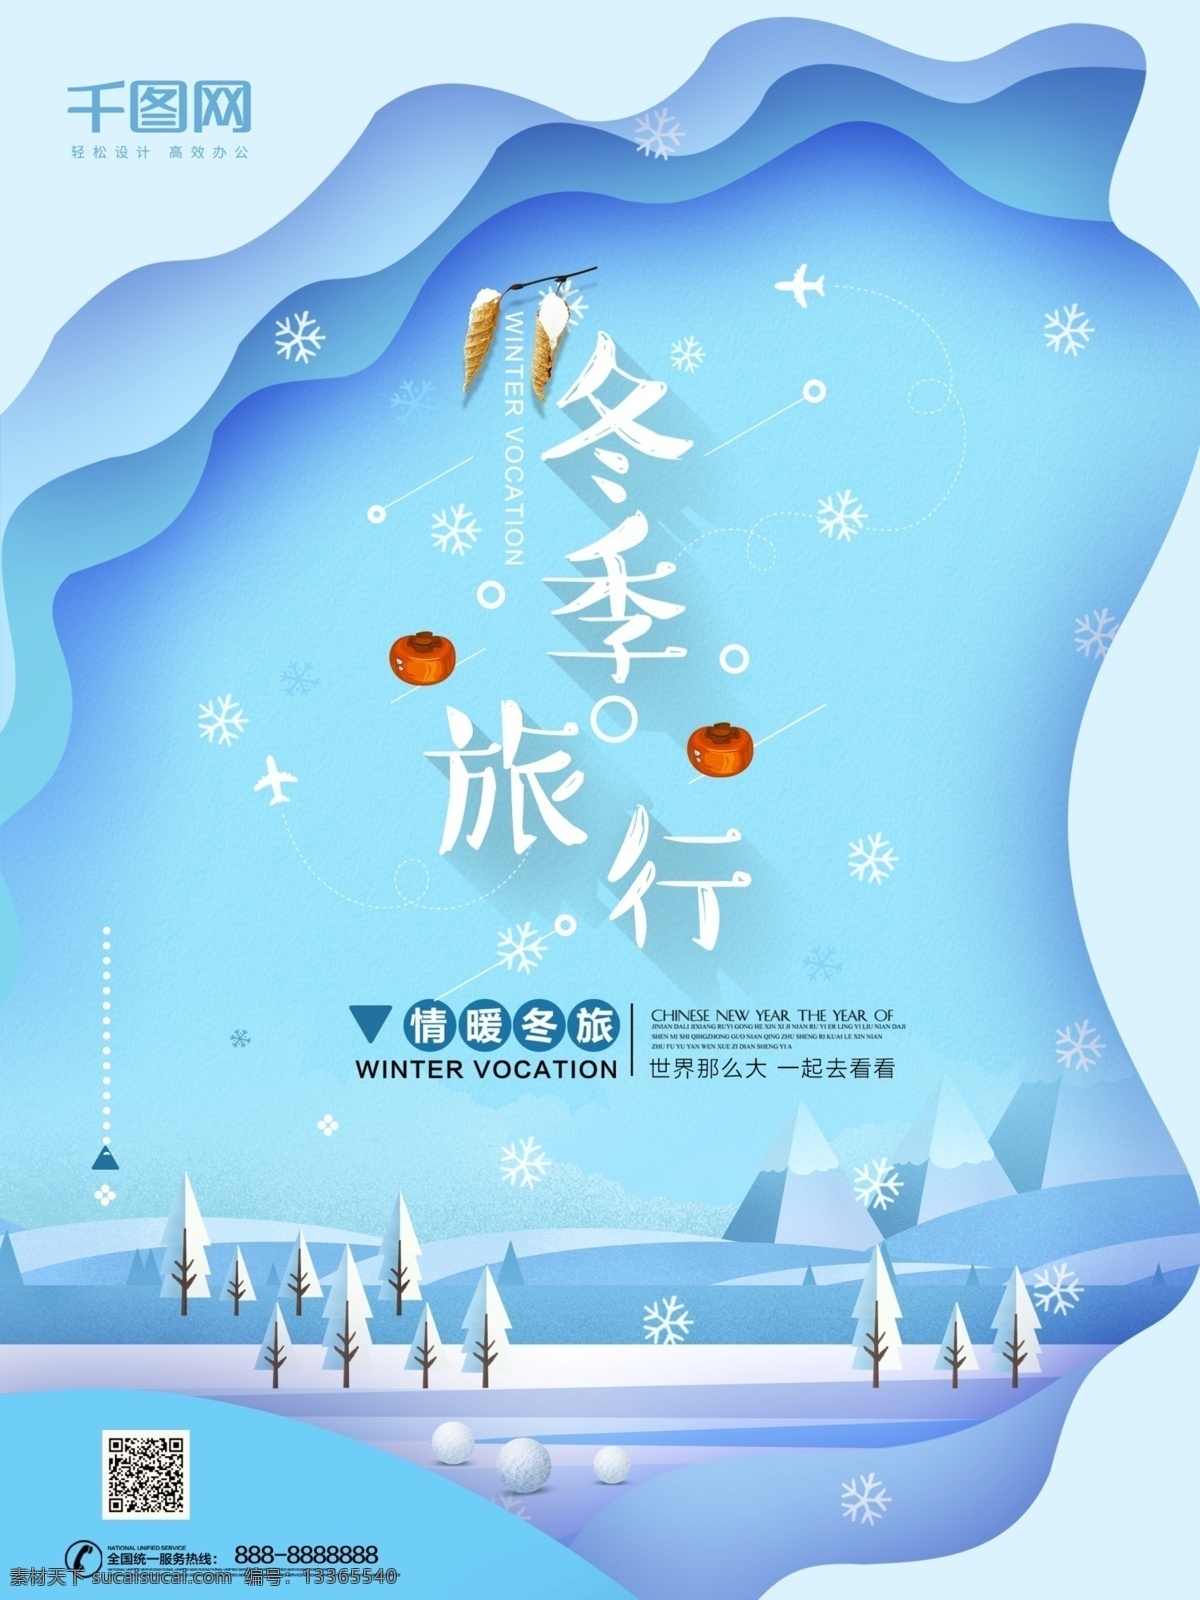 蓝色 小 清新 冬季 旅游 海报 小清新 旅行 下雪 冬季旅游 雪花